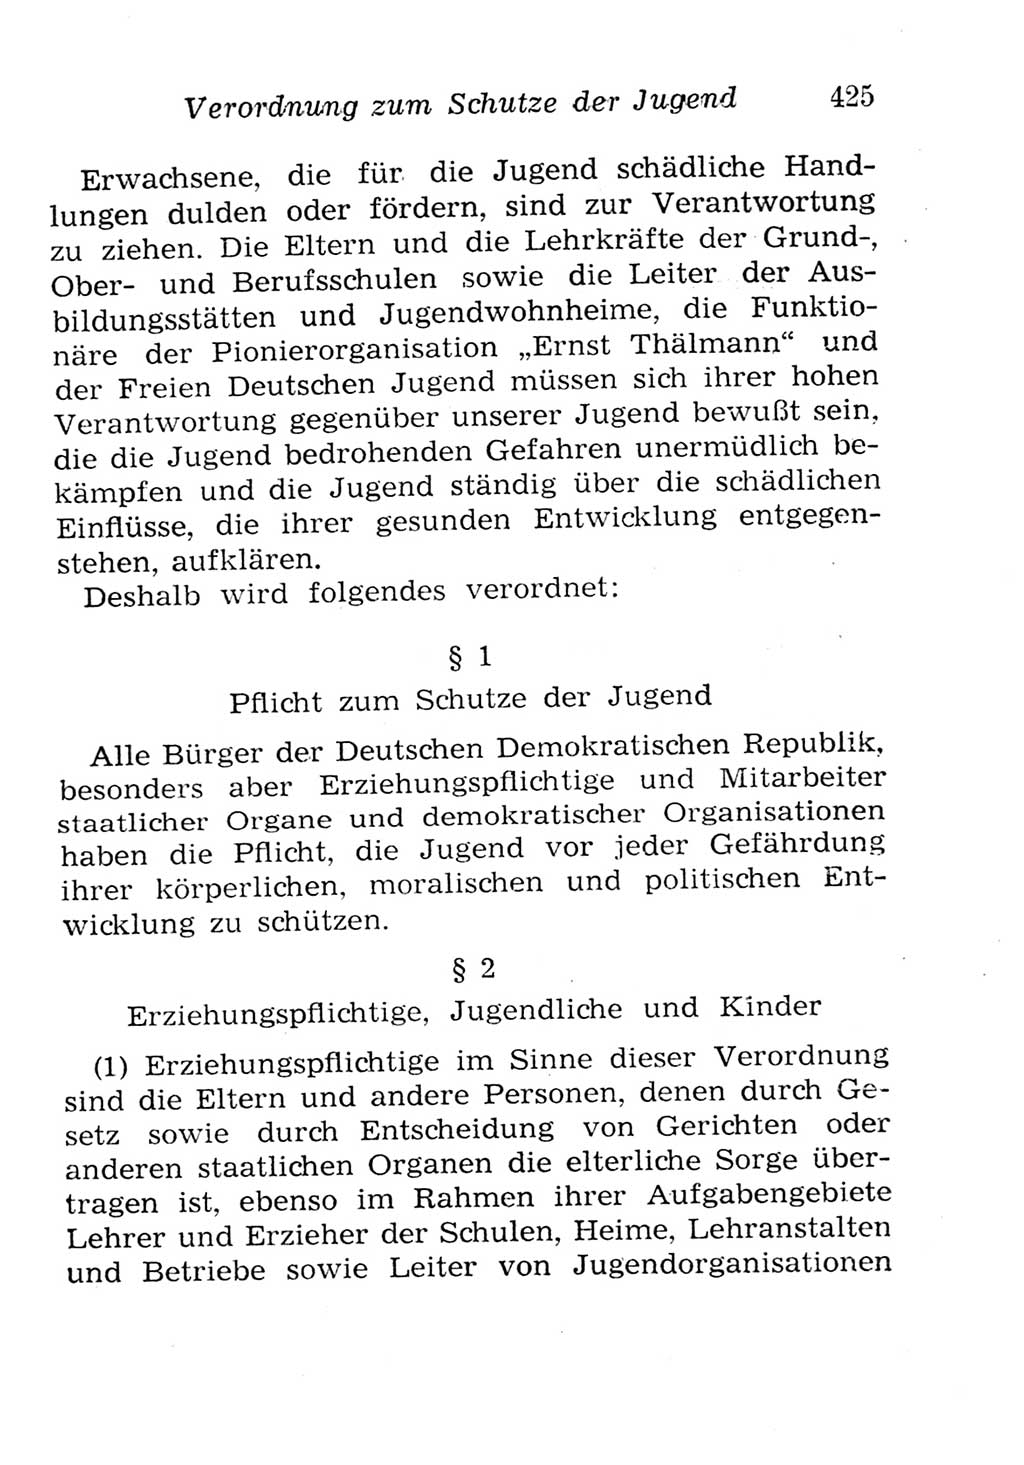 Strafgesetzbuch (StGB) und andere Strafgesetze [Deutsche Demokratische Republik (DDR)] 1957, Seite 425 (StGB Strafges. DDR 1957, S. 425)